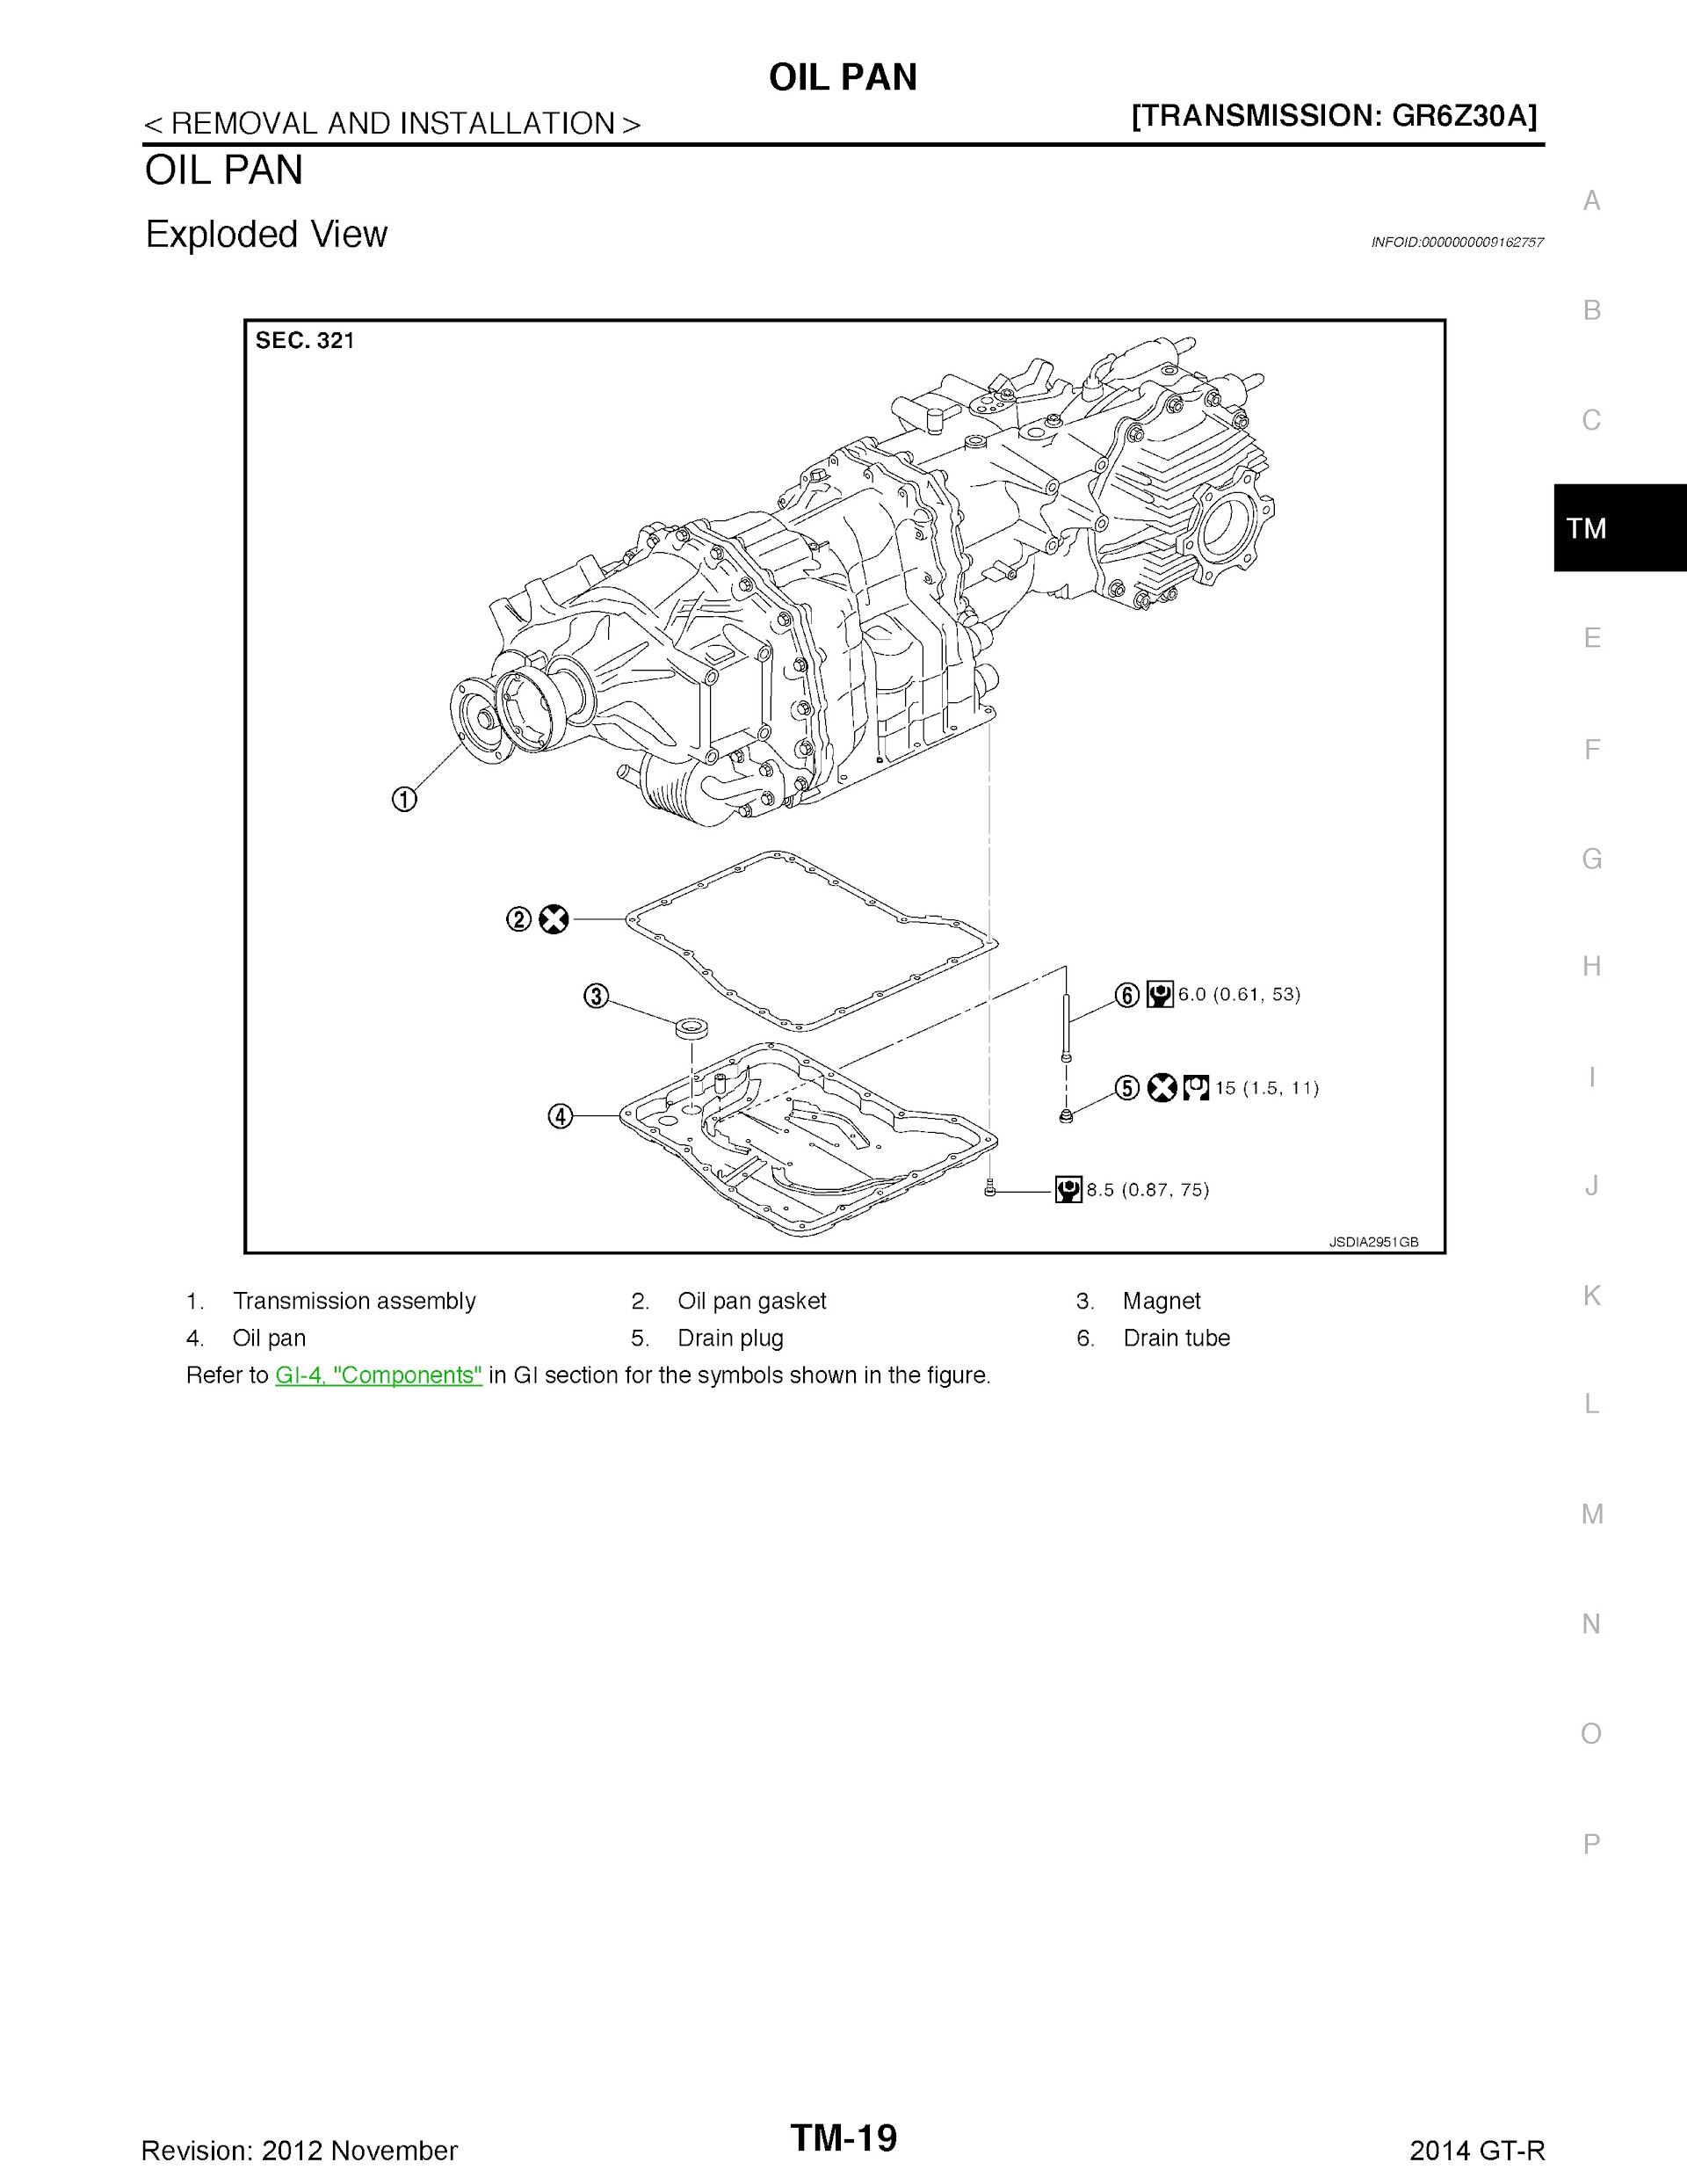 2010-2014 Nissan GTR Repair Manual